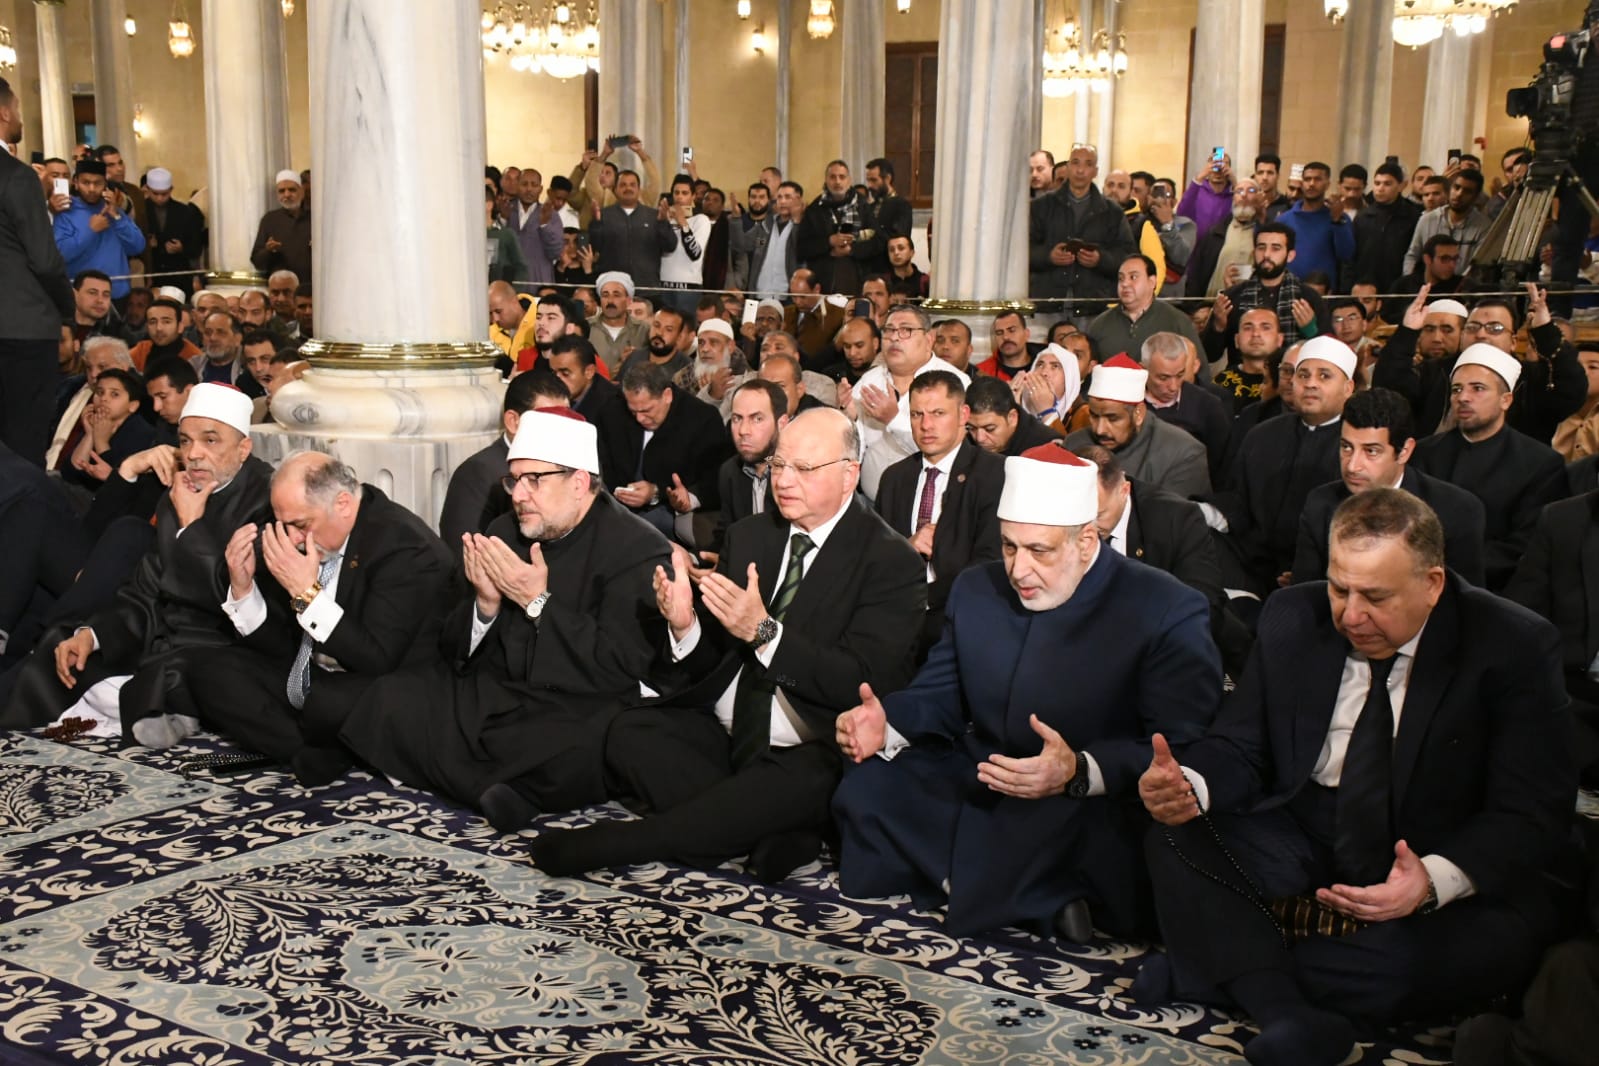 وزير الأوقاف يشهد الاحتفال بليلة النصف من شعبان بمسجد الإمام الحسين بالقاهرة |صور